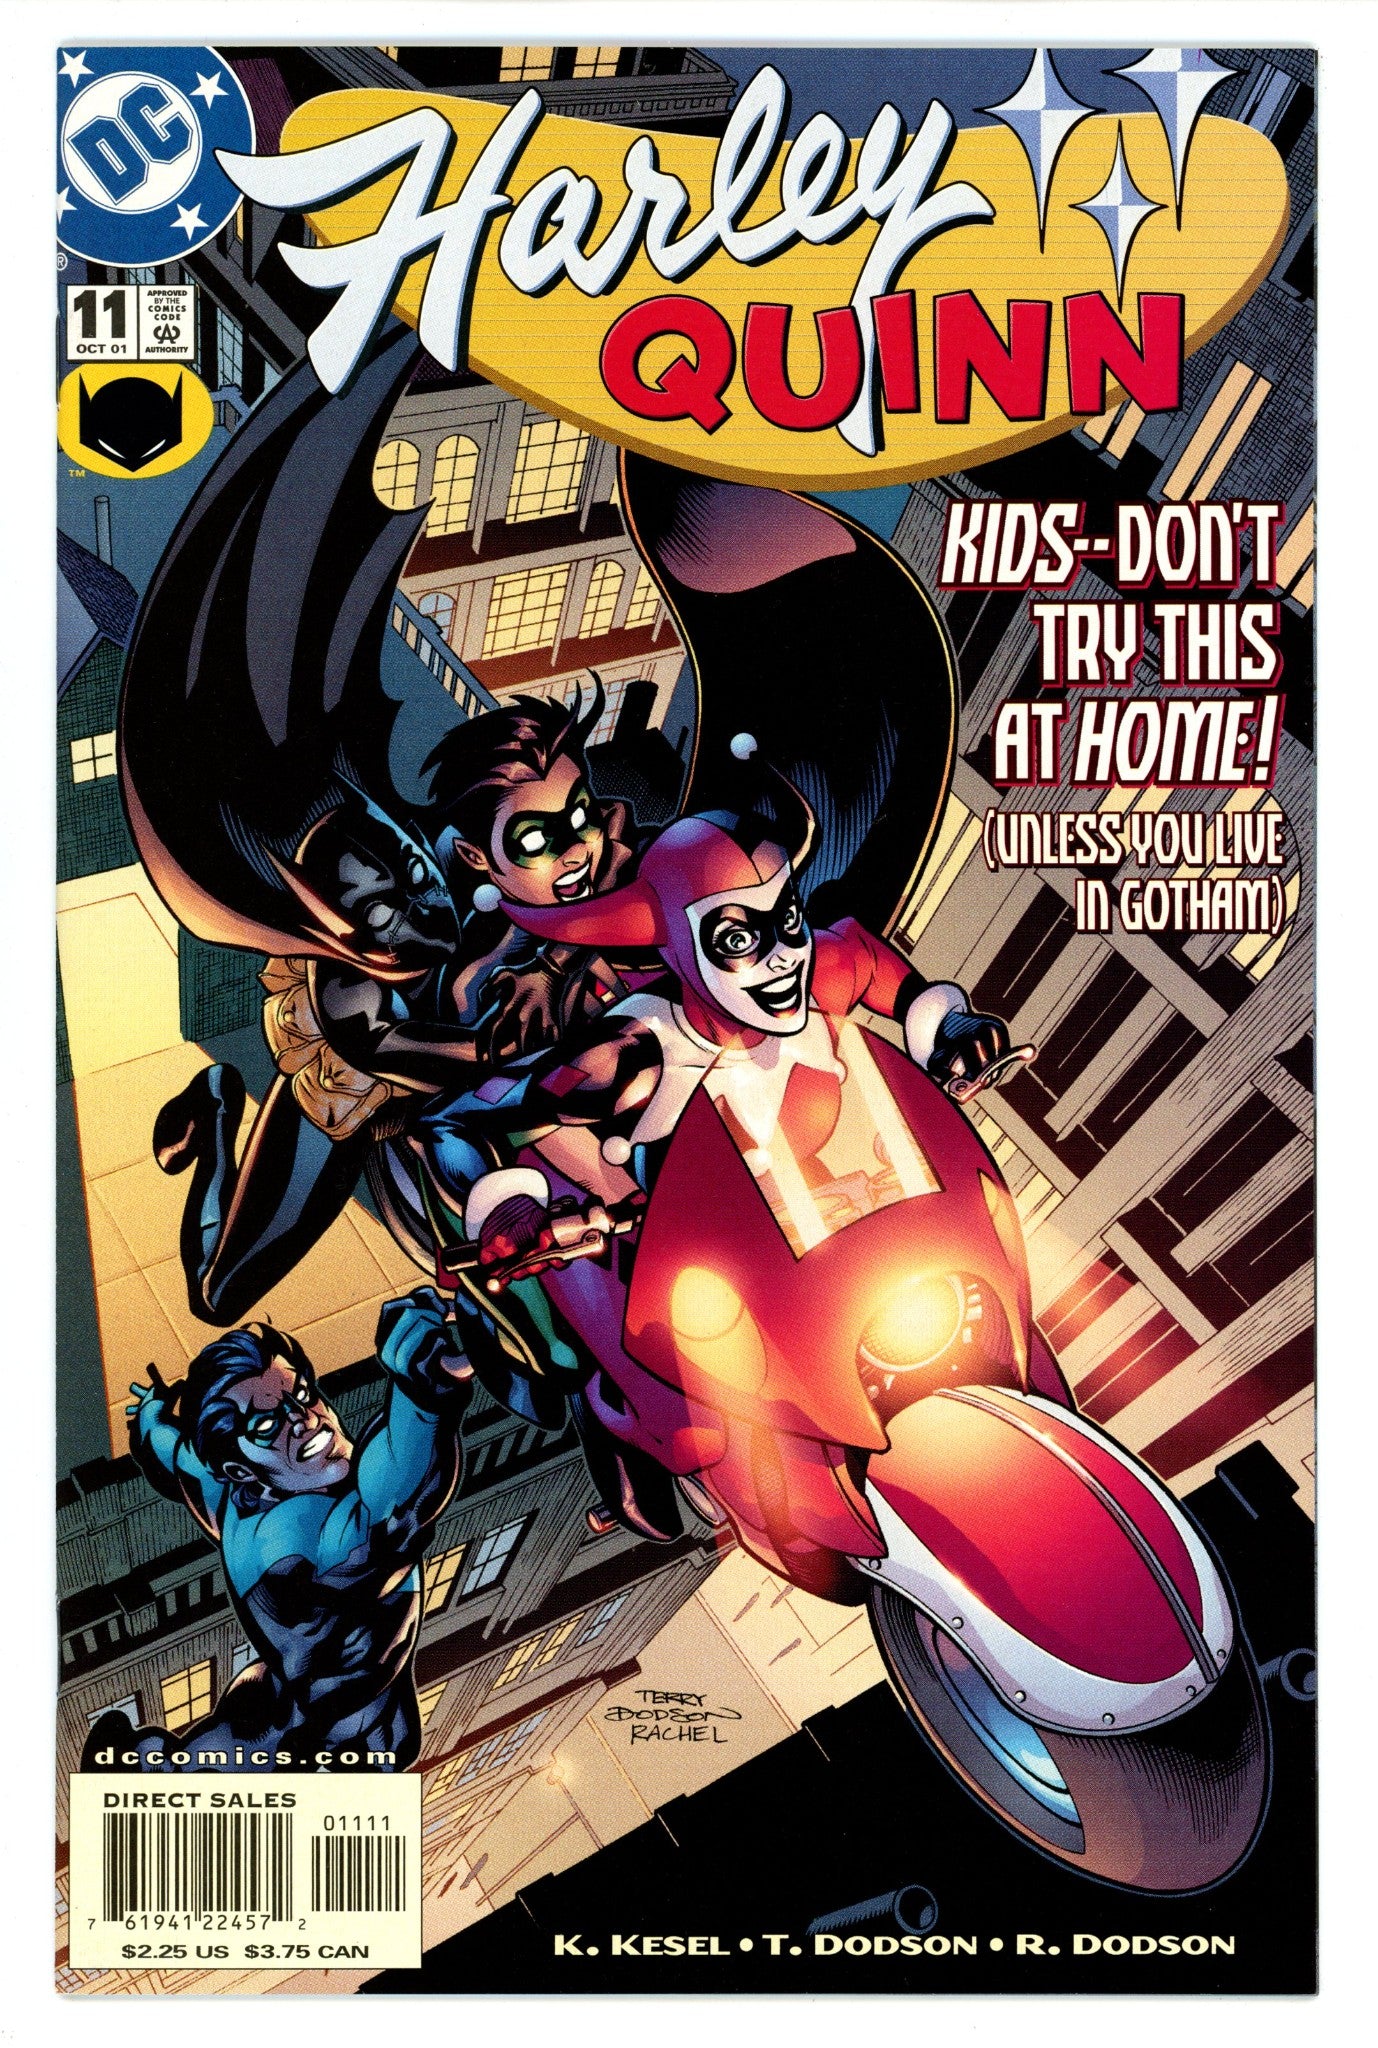 Harley Quinn Vol 1 11 NM (9.4) (2001) 